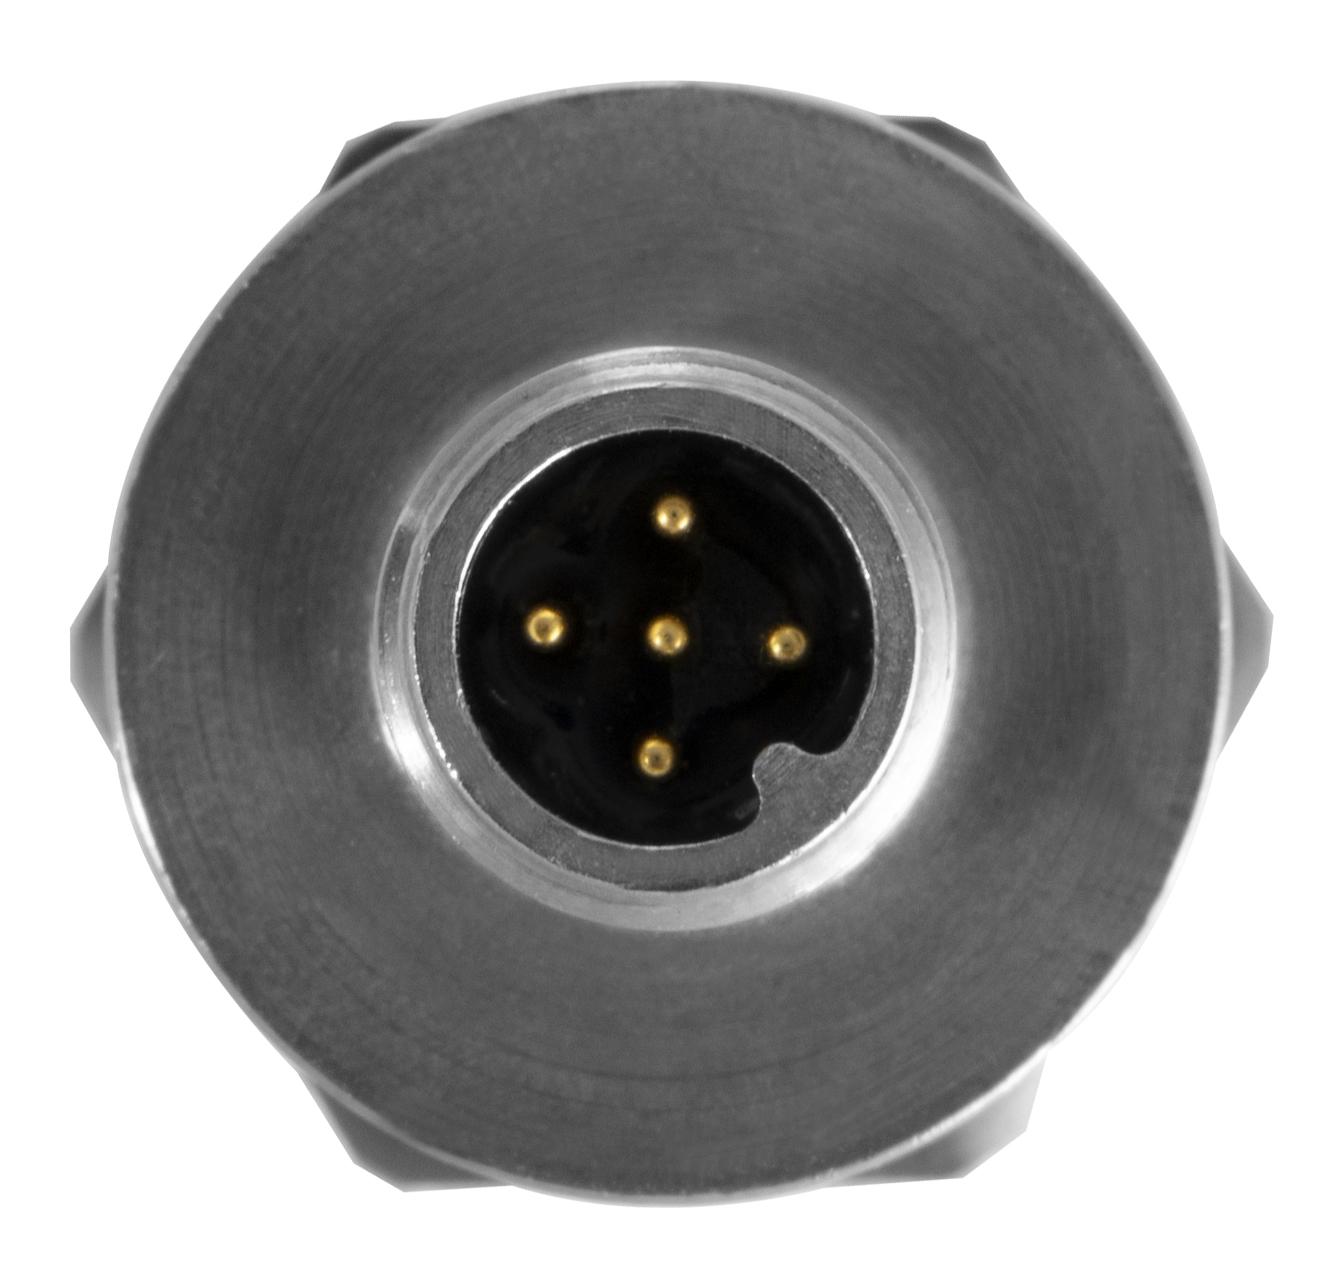 Product image of PTE7300 Hermetic Pressure Sensor m12 top view